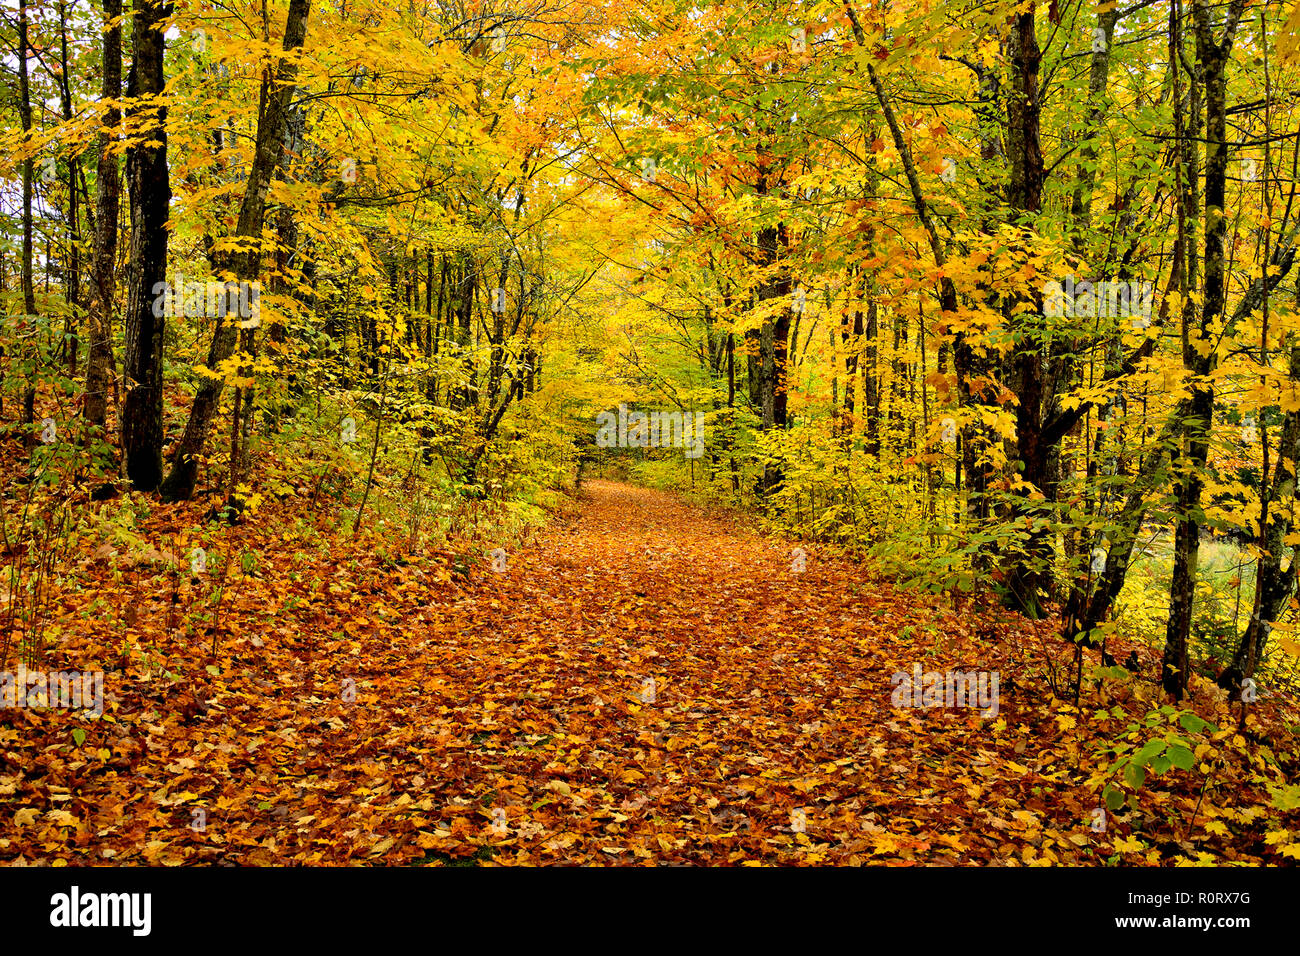 Eine horizontale Landschaft Bild eines Landes Lane, die Blätter von den Bäumen im ländlichen Sussex New Brunswick Kanada gefallen sind abgedeckt ist. Stockfoto